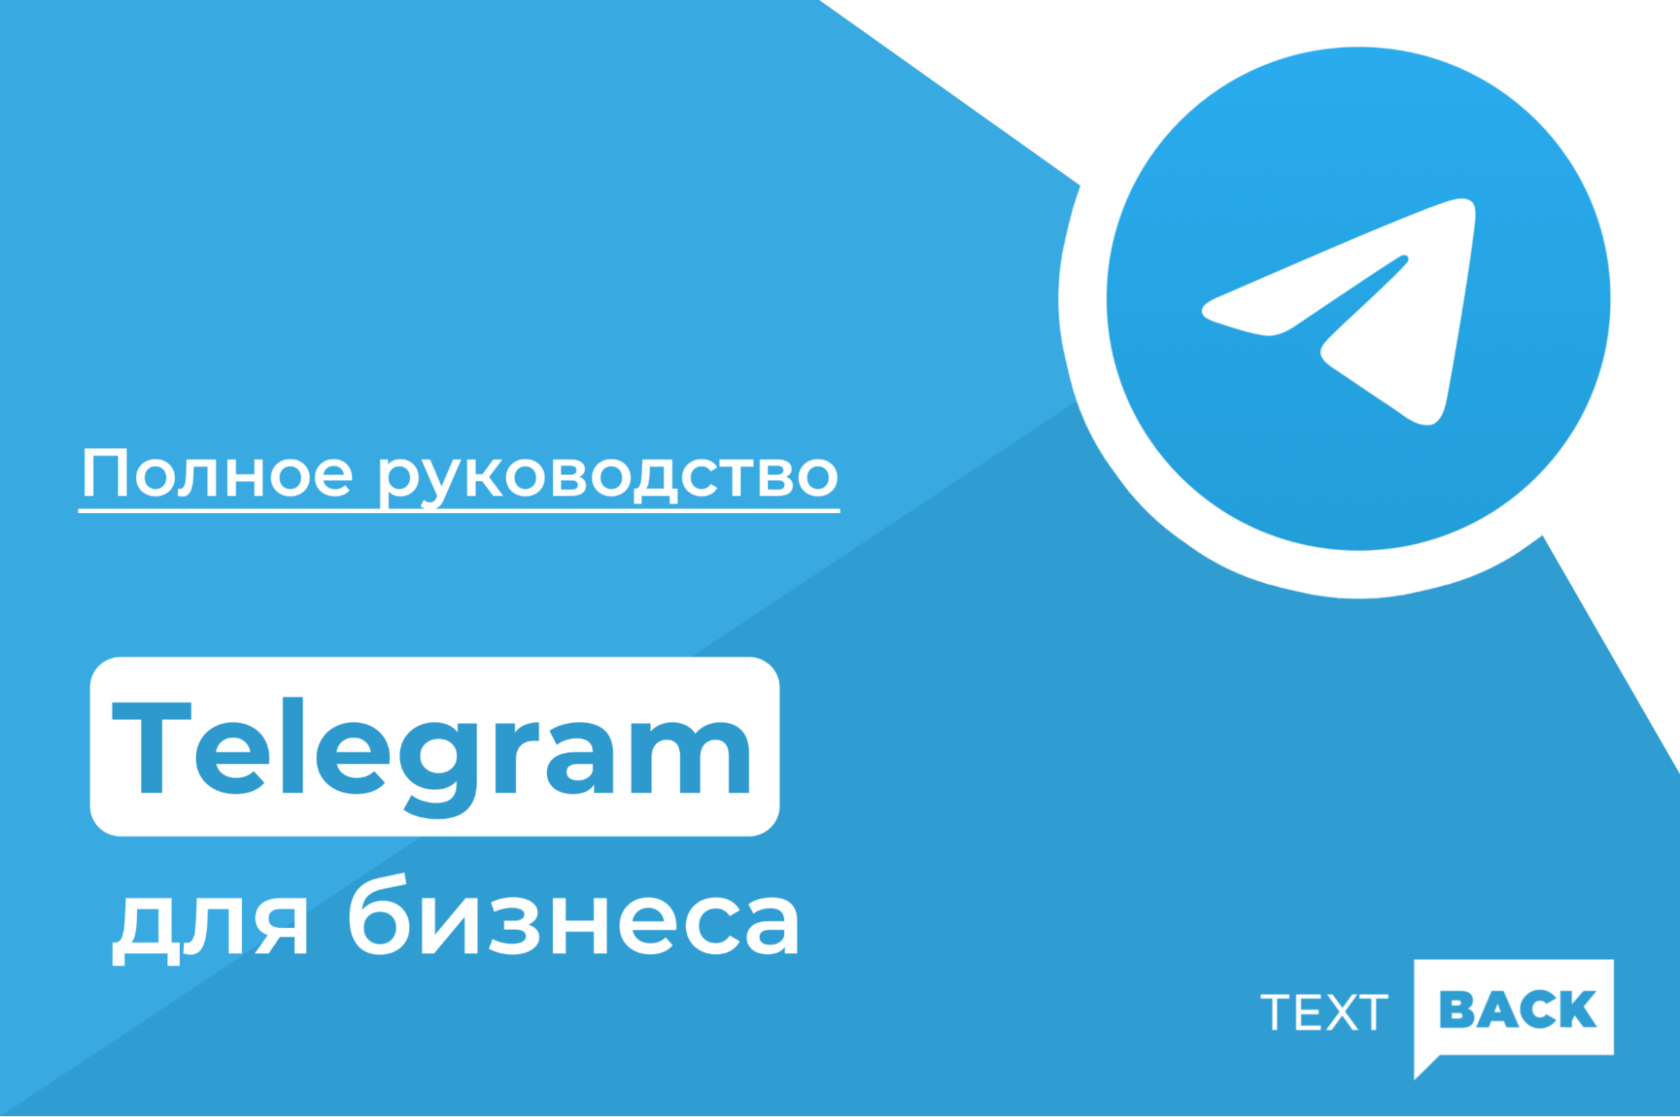 Сделать логотип для канала телеграмм фото 24